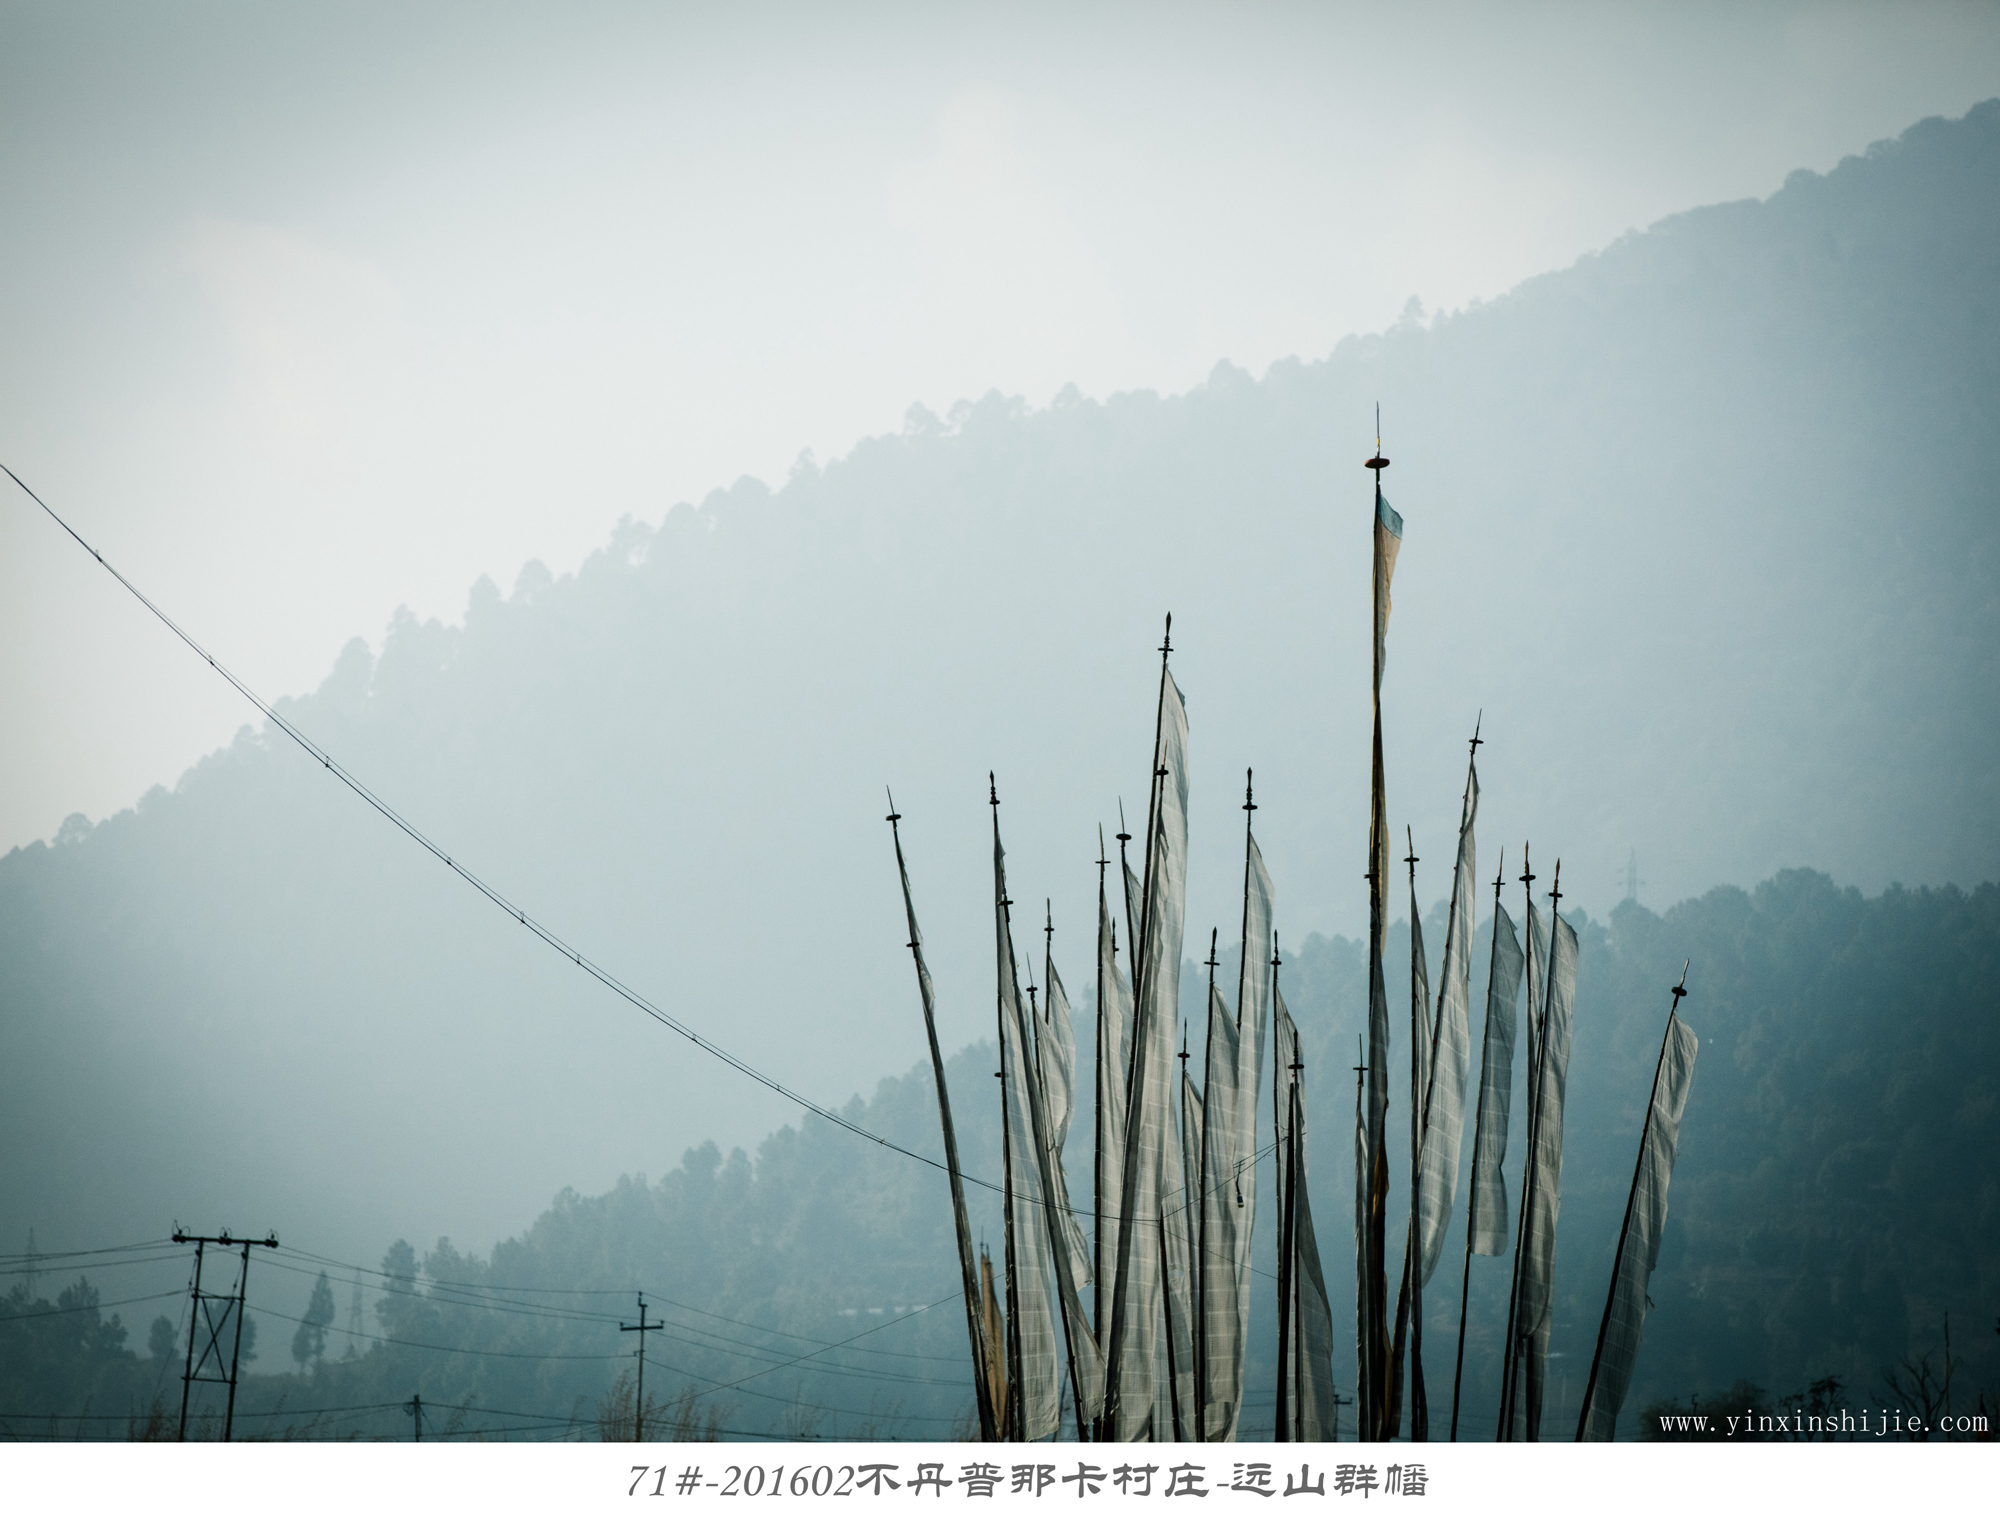 71#-201602不丹普那卡村庄